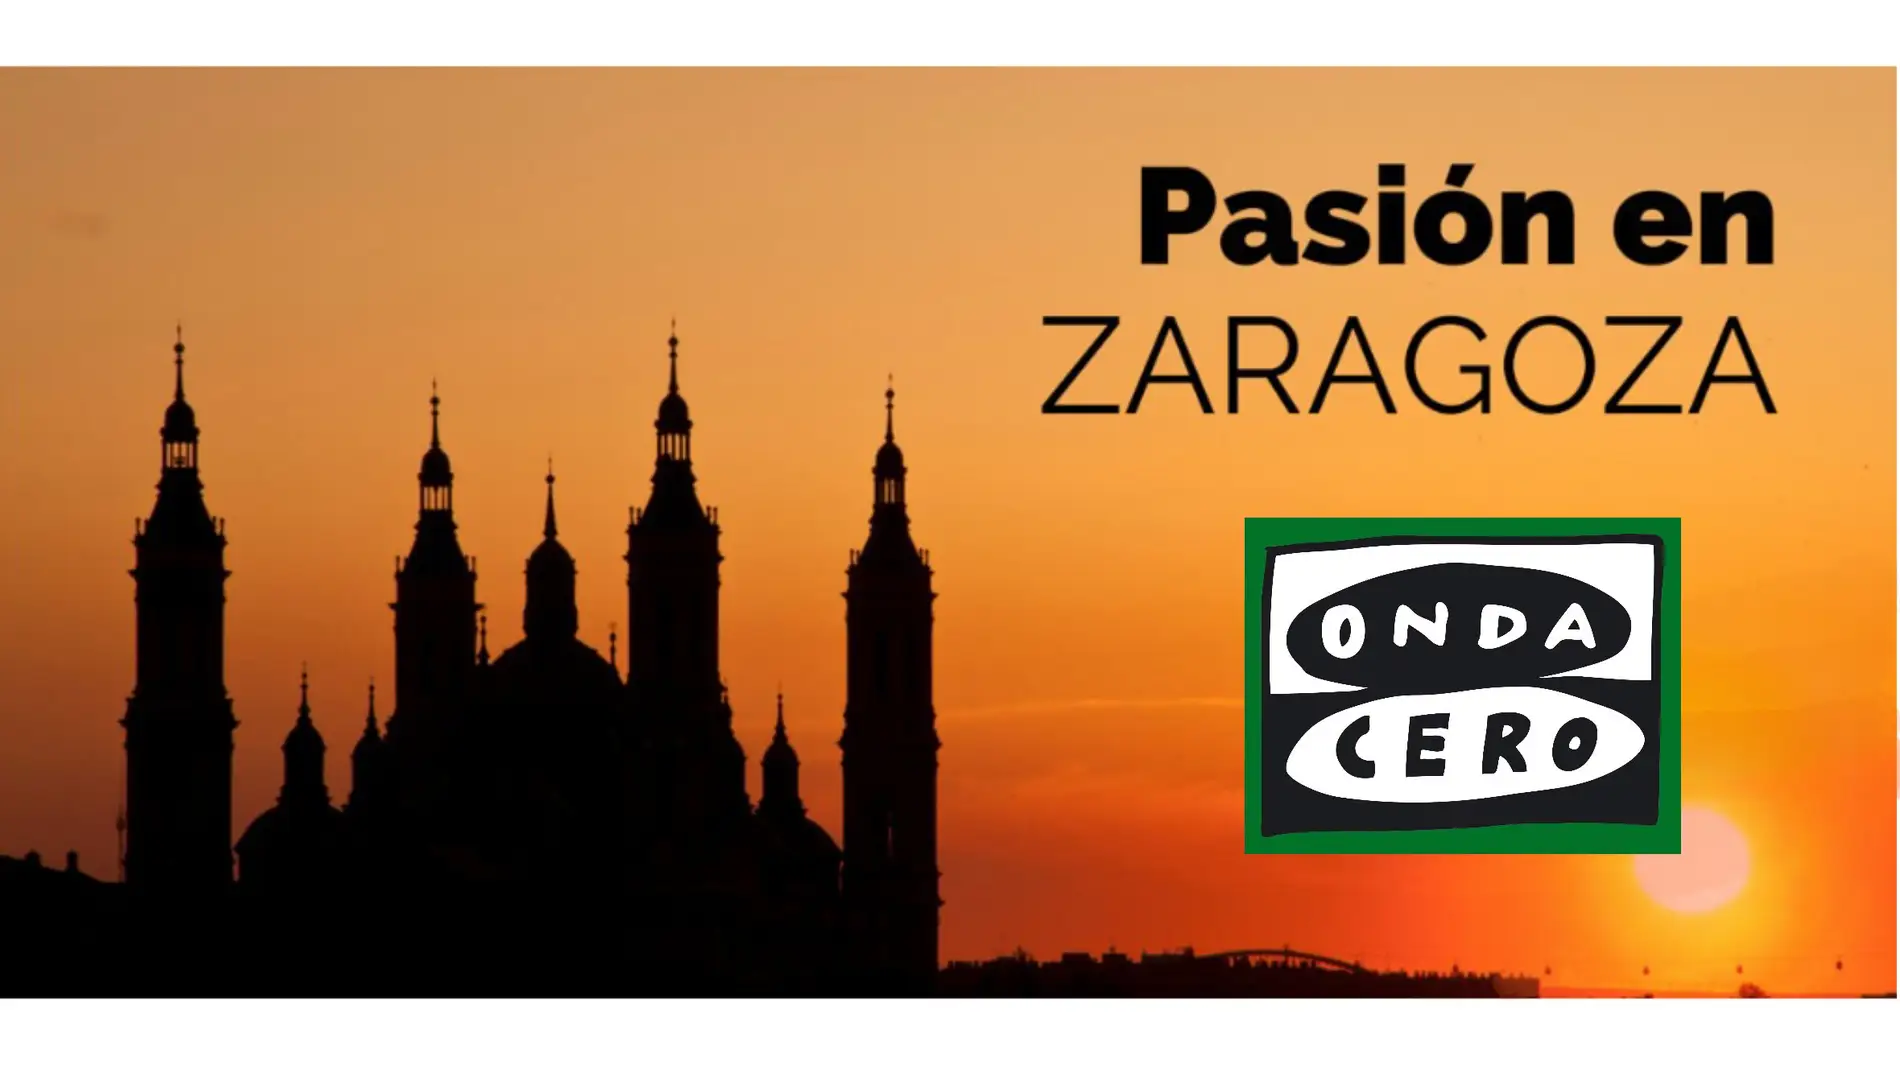 Agenda cofrade de Pasión en Zaragoza